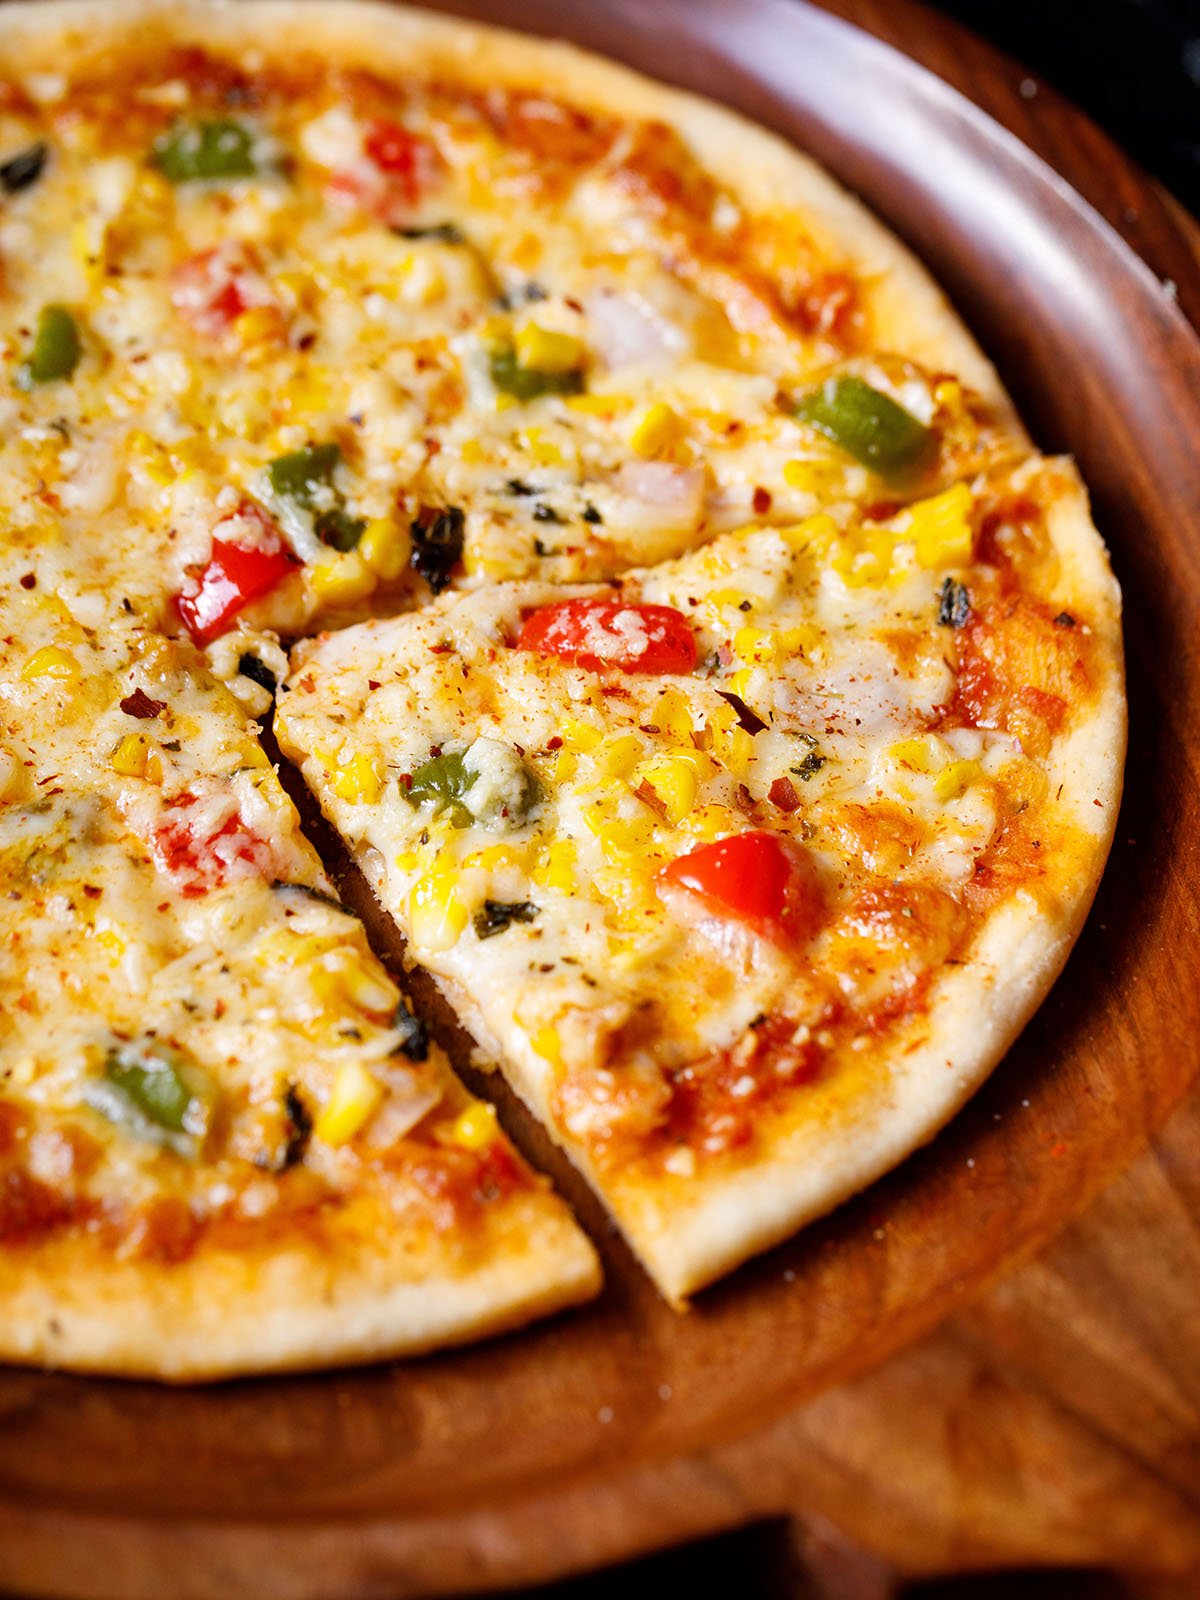 viipaloitu pizza jäljellä olevan pizzan kanssa puisella pizzalevyllä, johon on ripoteltu kuivattuja yrttejä ja punaisia ​​chilihiutaleita